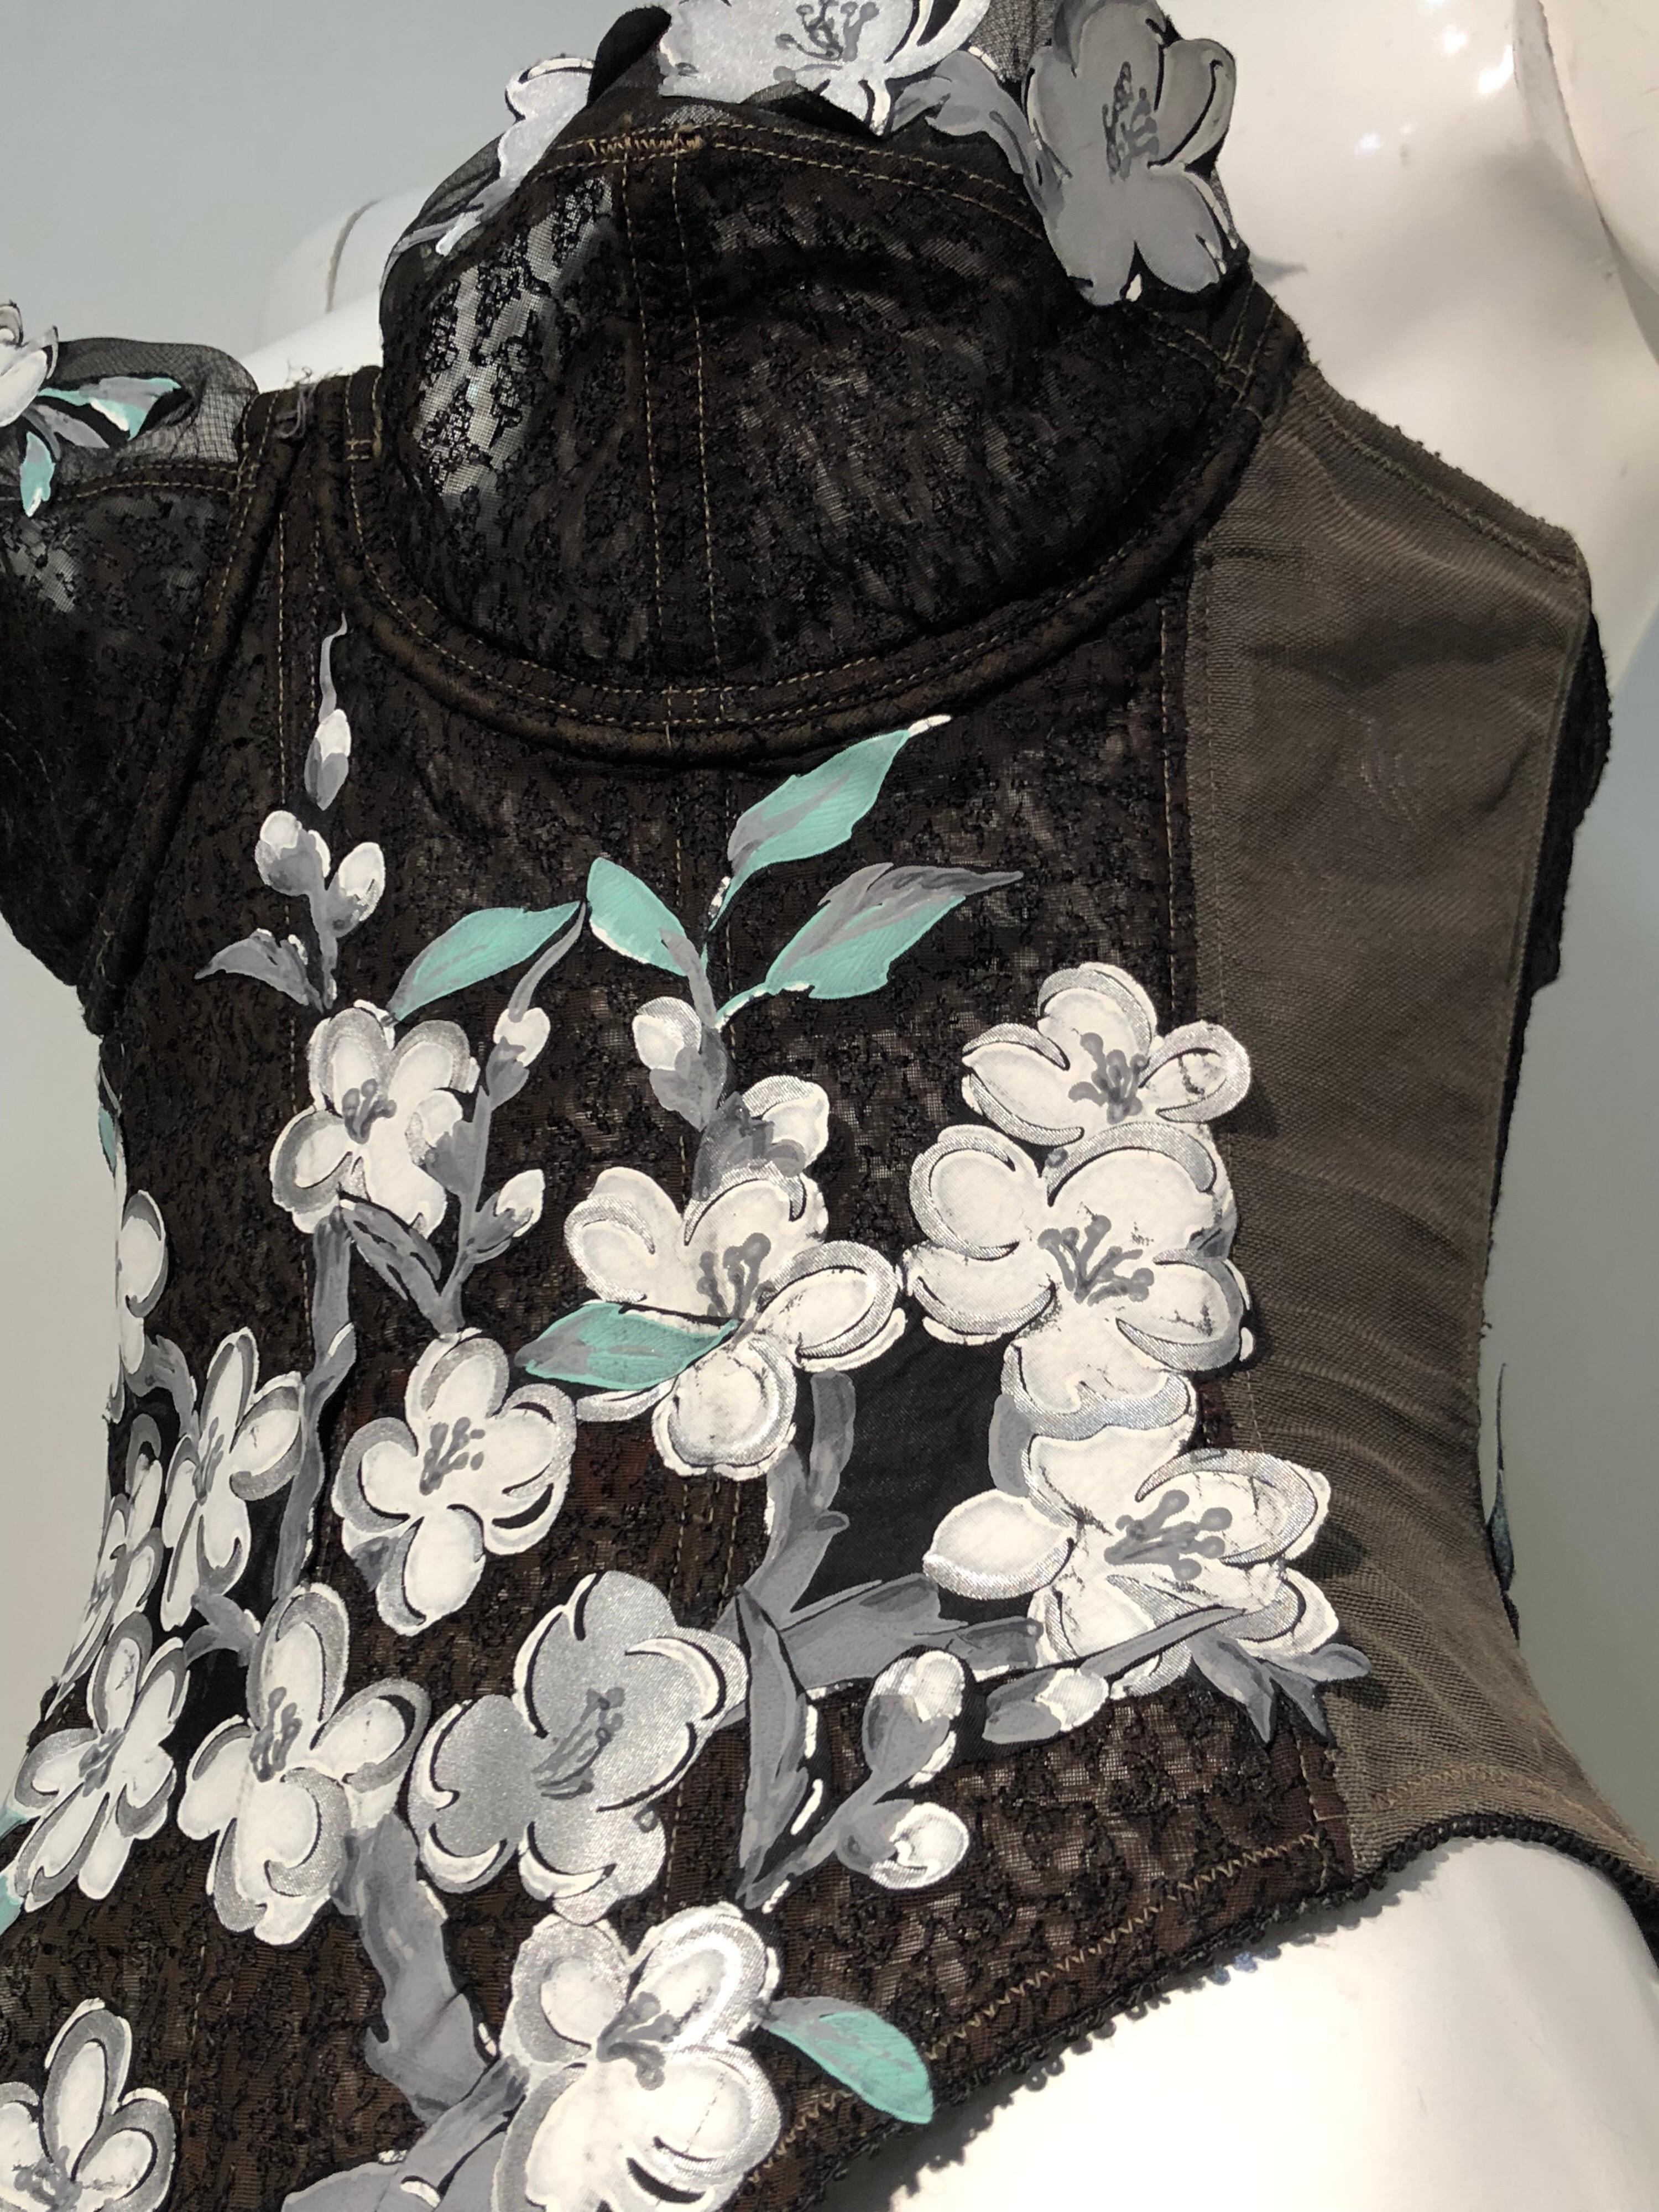 Une Veuve joyeuse Warner des années 1950, sans bretelles, embellie par Torso Creations avec des gerbes florales de cornouiller découpées et appliquées en soie.
Taille 36